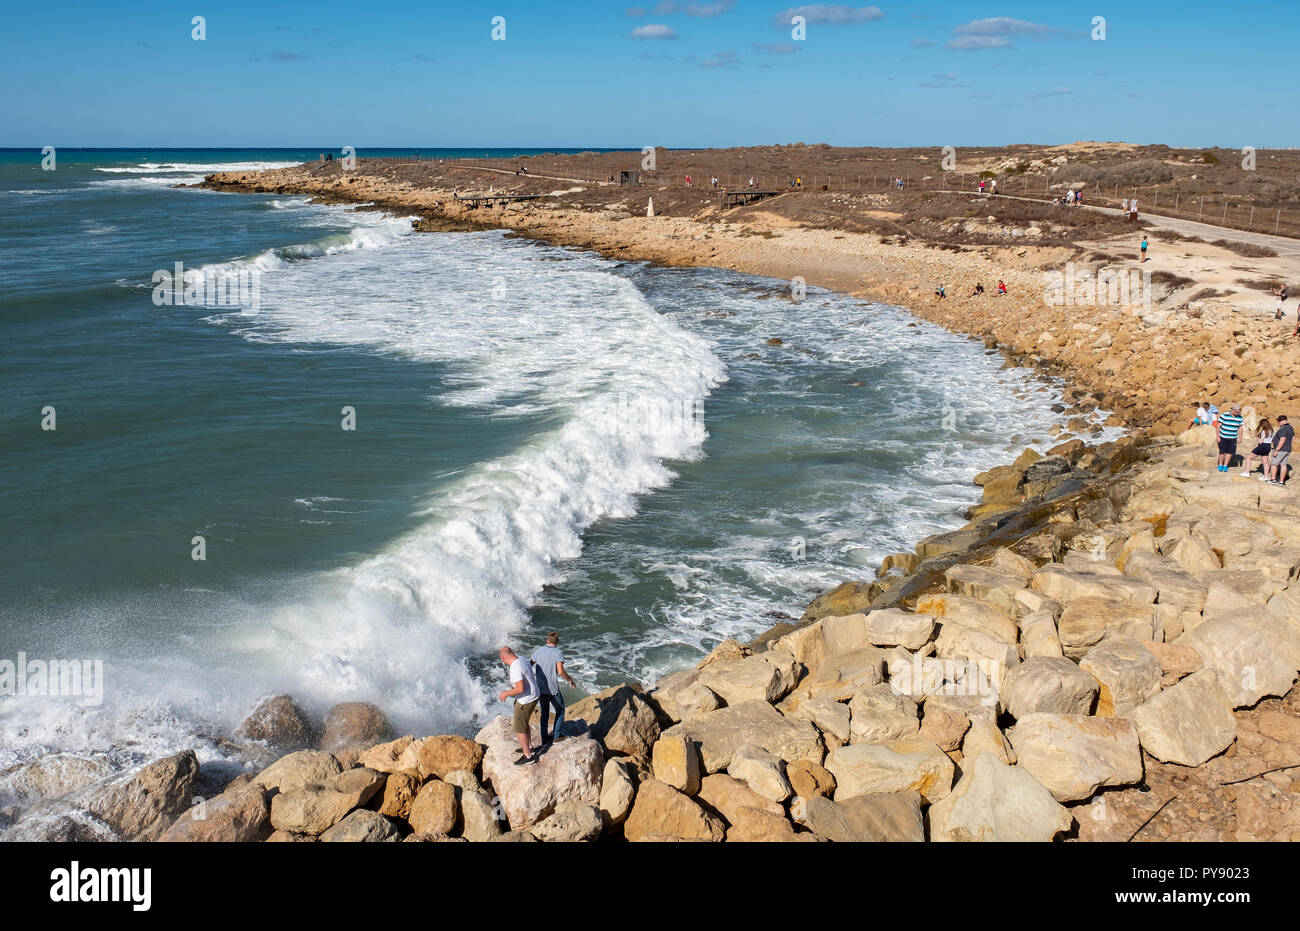 Les gens regardent comme de grandes vagues s'écraser sur le rivage près de château de Paphos, Paphos, Chypre Banque D'Images